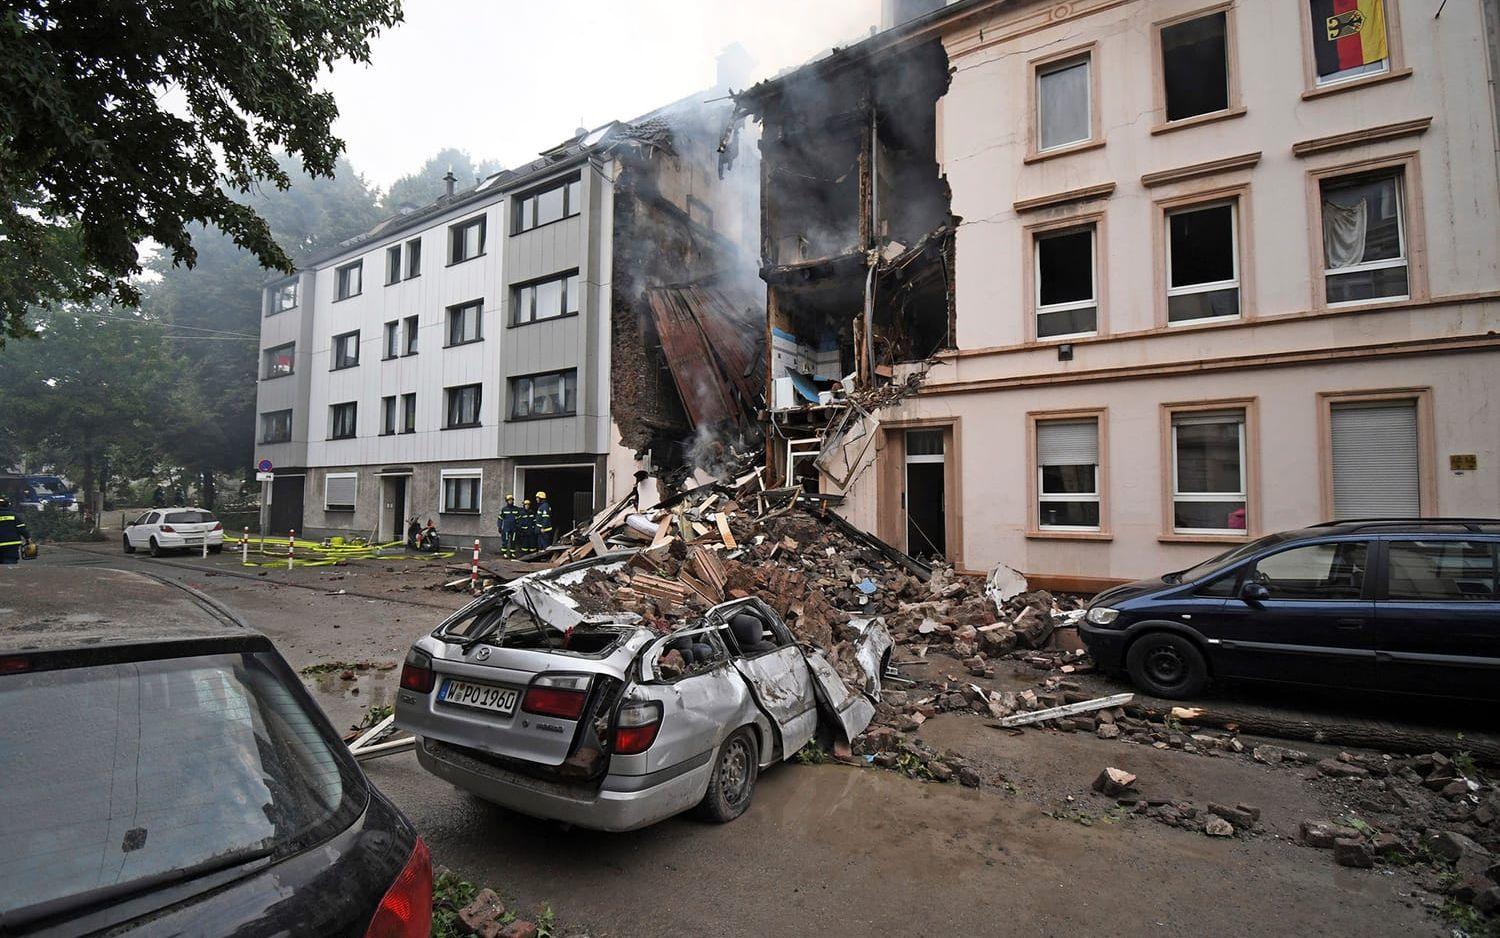 25 personer har skadats, enligt tysk polis, när ett hus och och bilar förstördes i en explosion i staden Wuppertal.